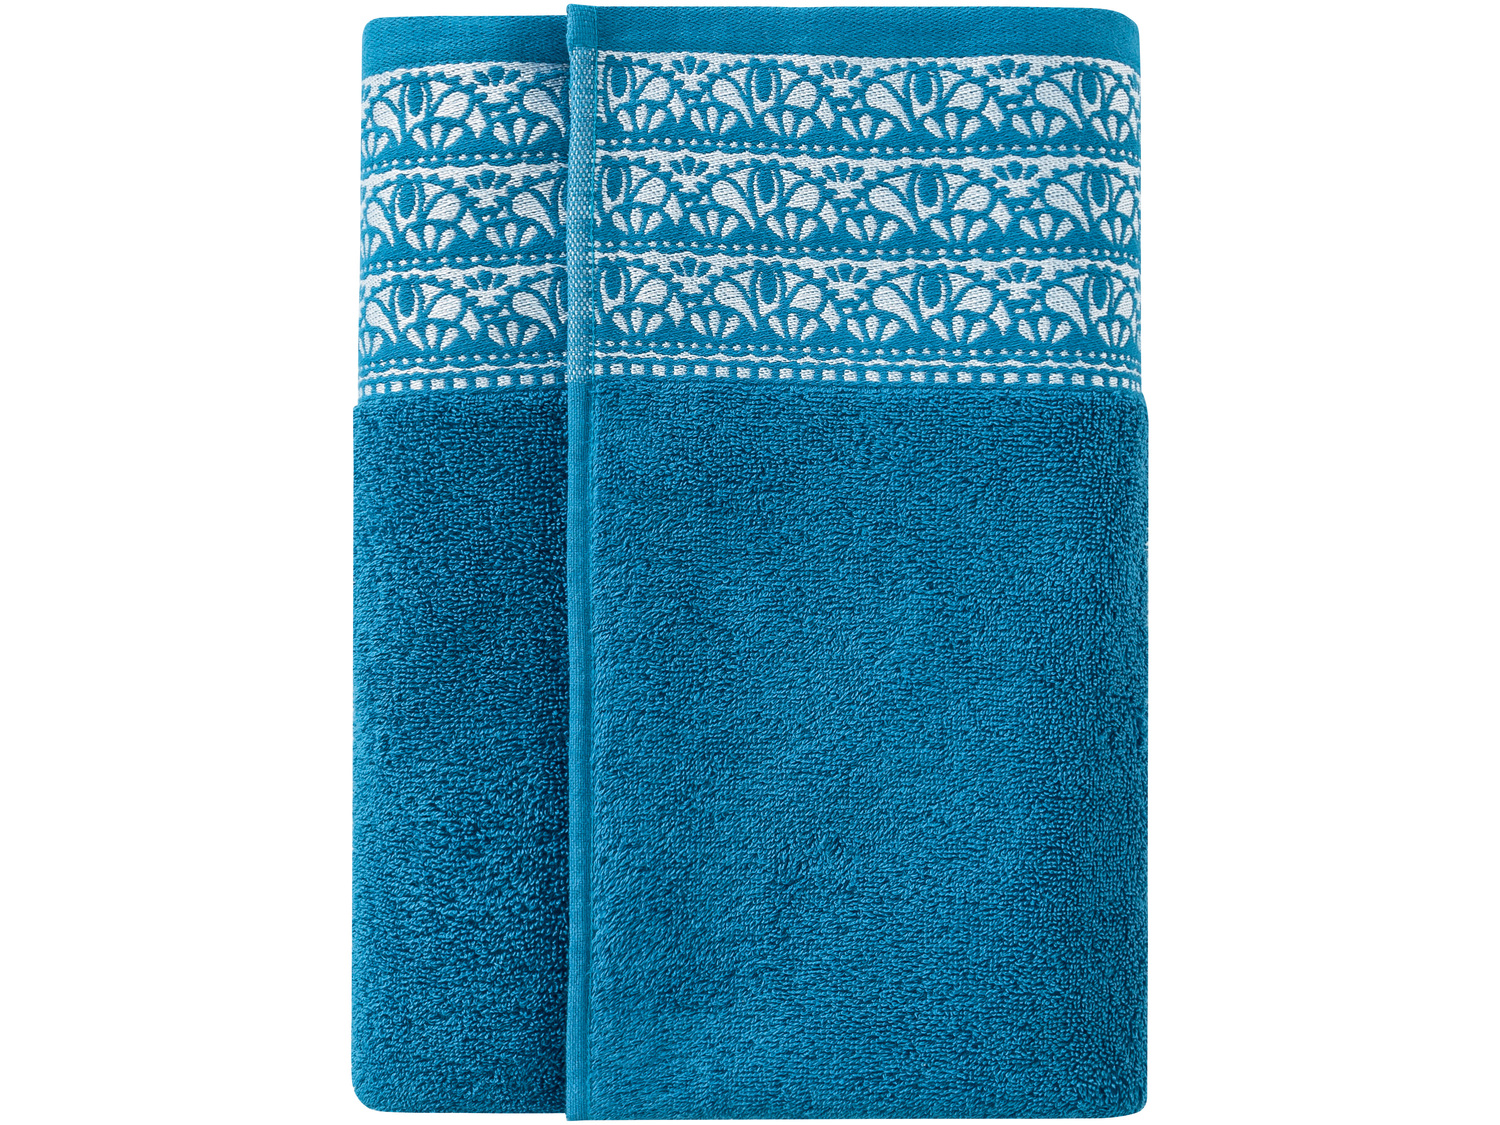 Ręcznik 70 x 130 cm Miomare, cena 19,99 PLN 
5 kolorów 
- chłonne i wytrzymałe
- ...